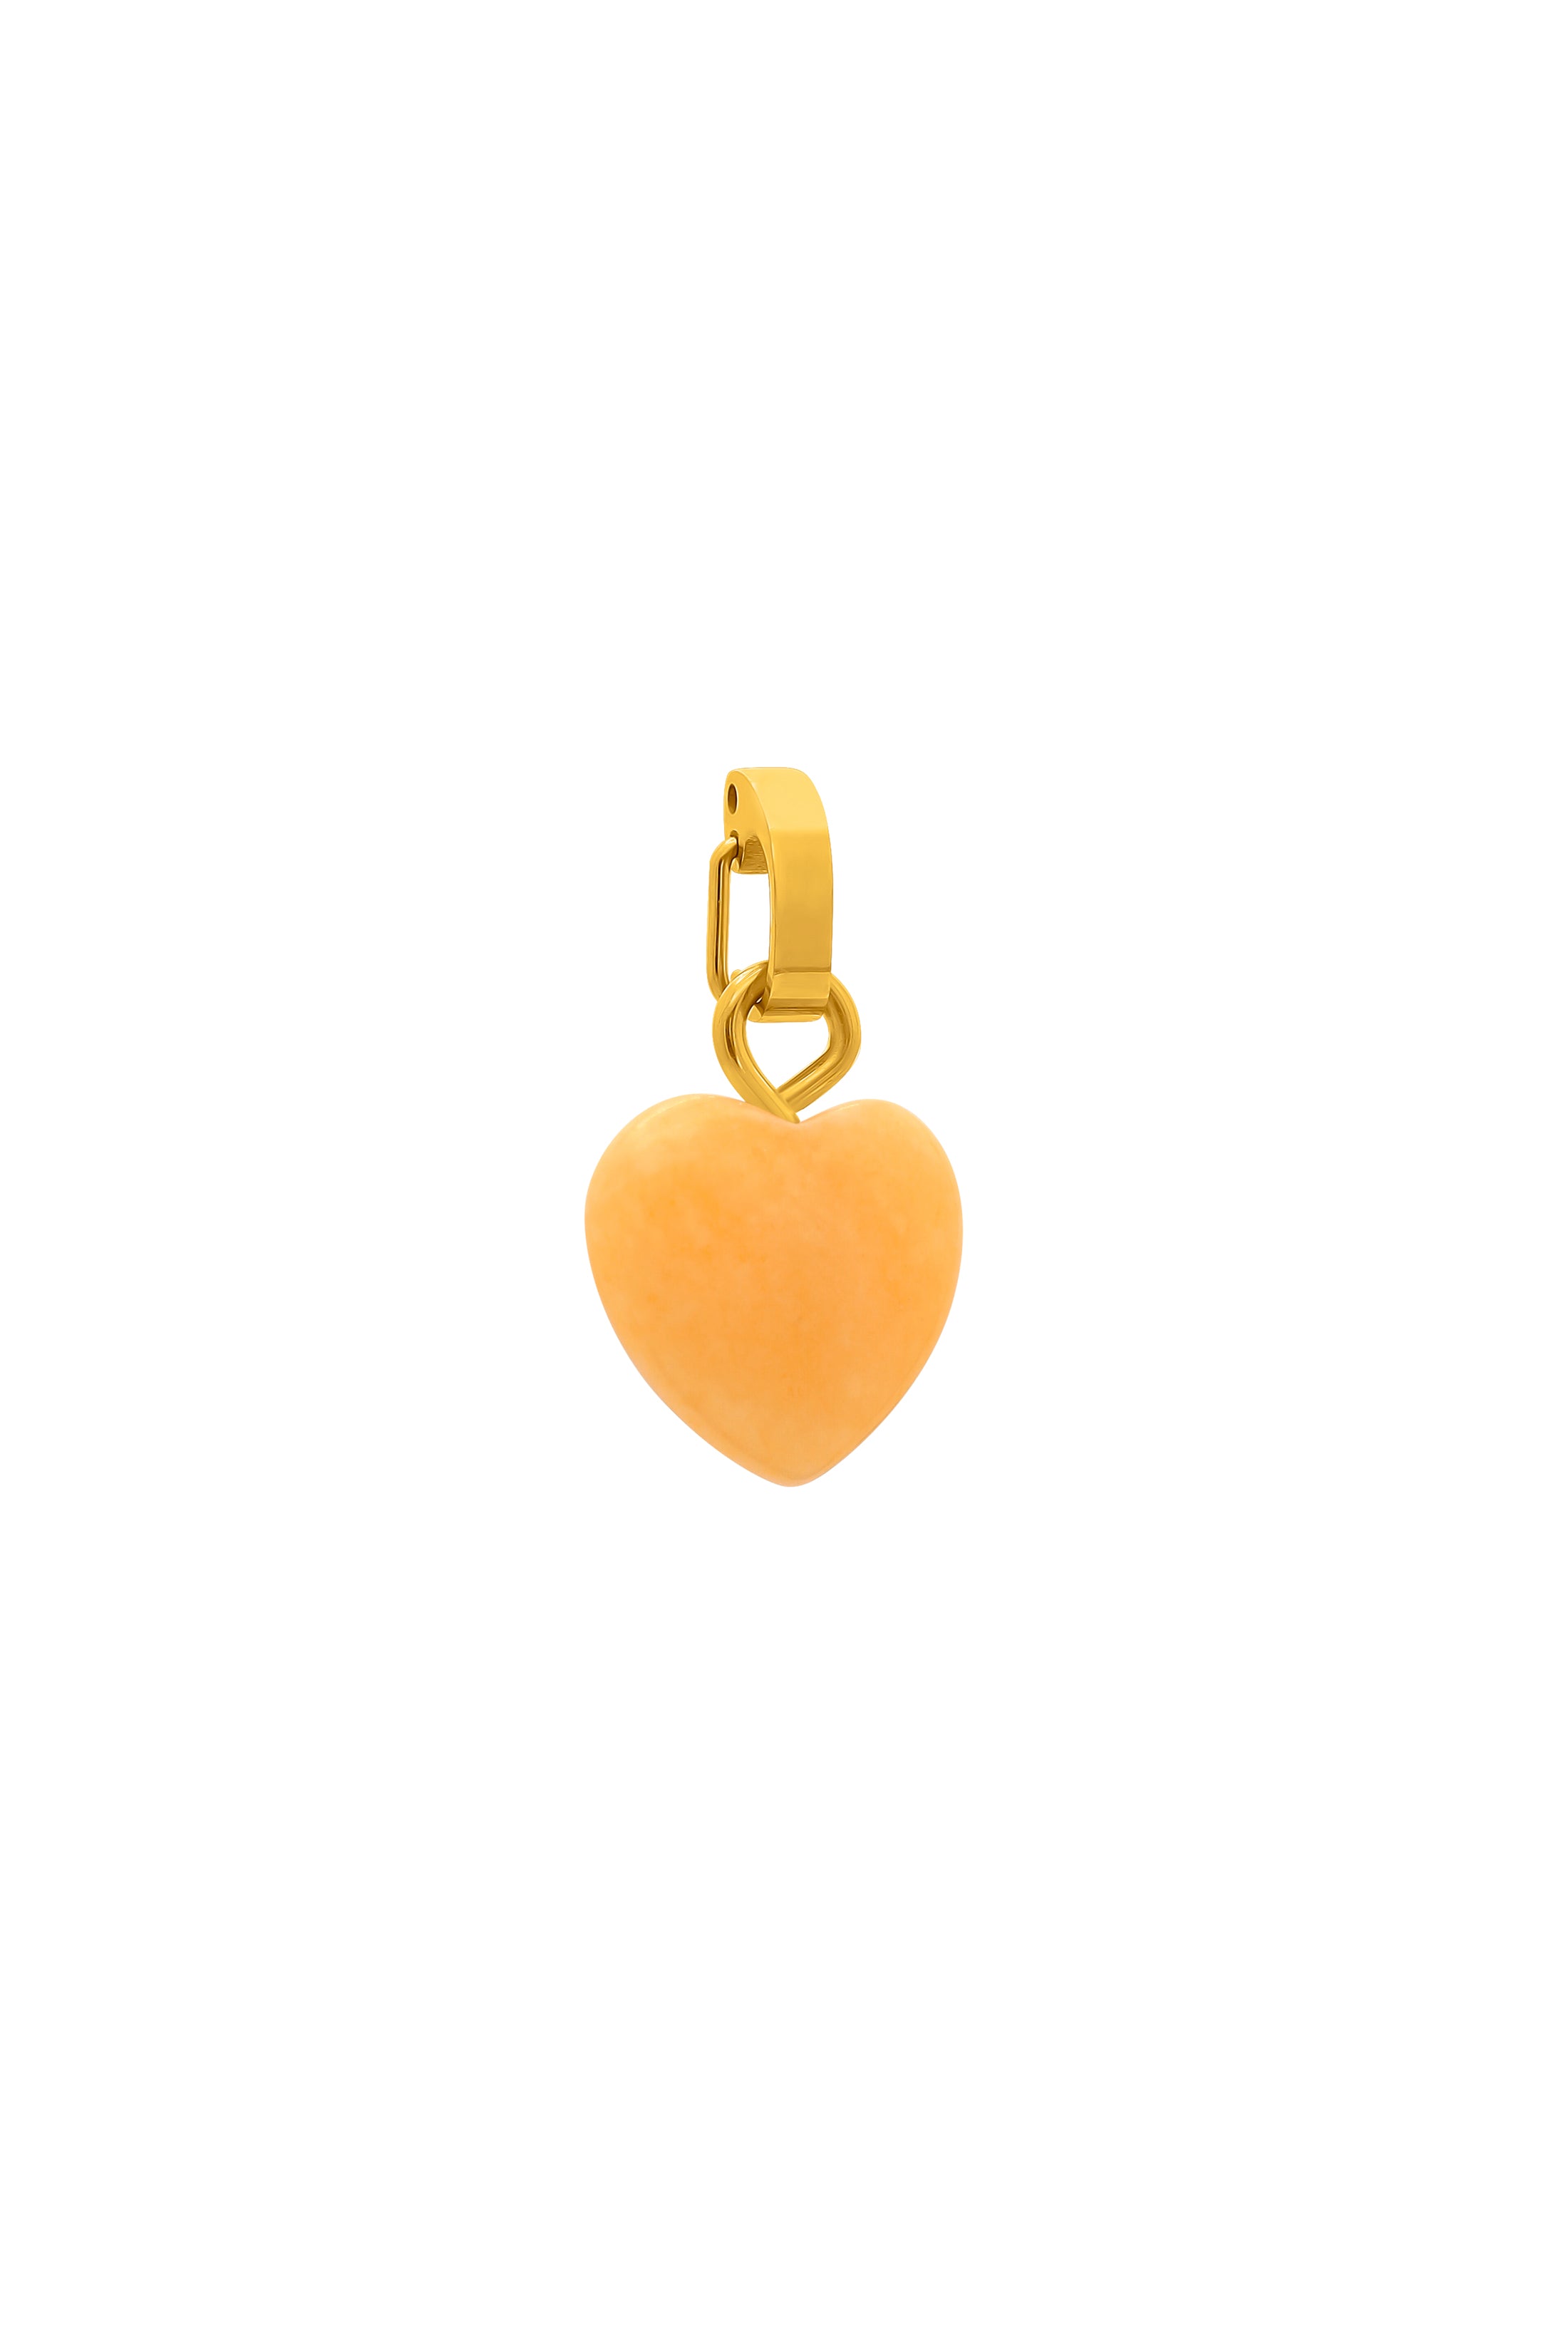 November Heart Birthstone Pendant